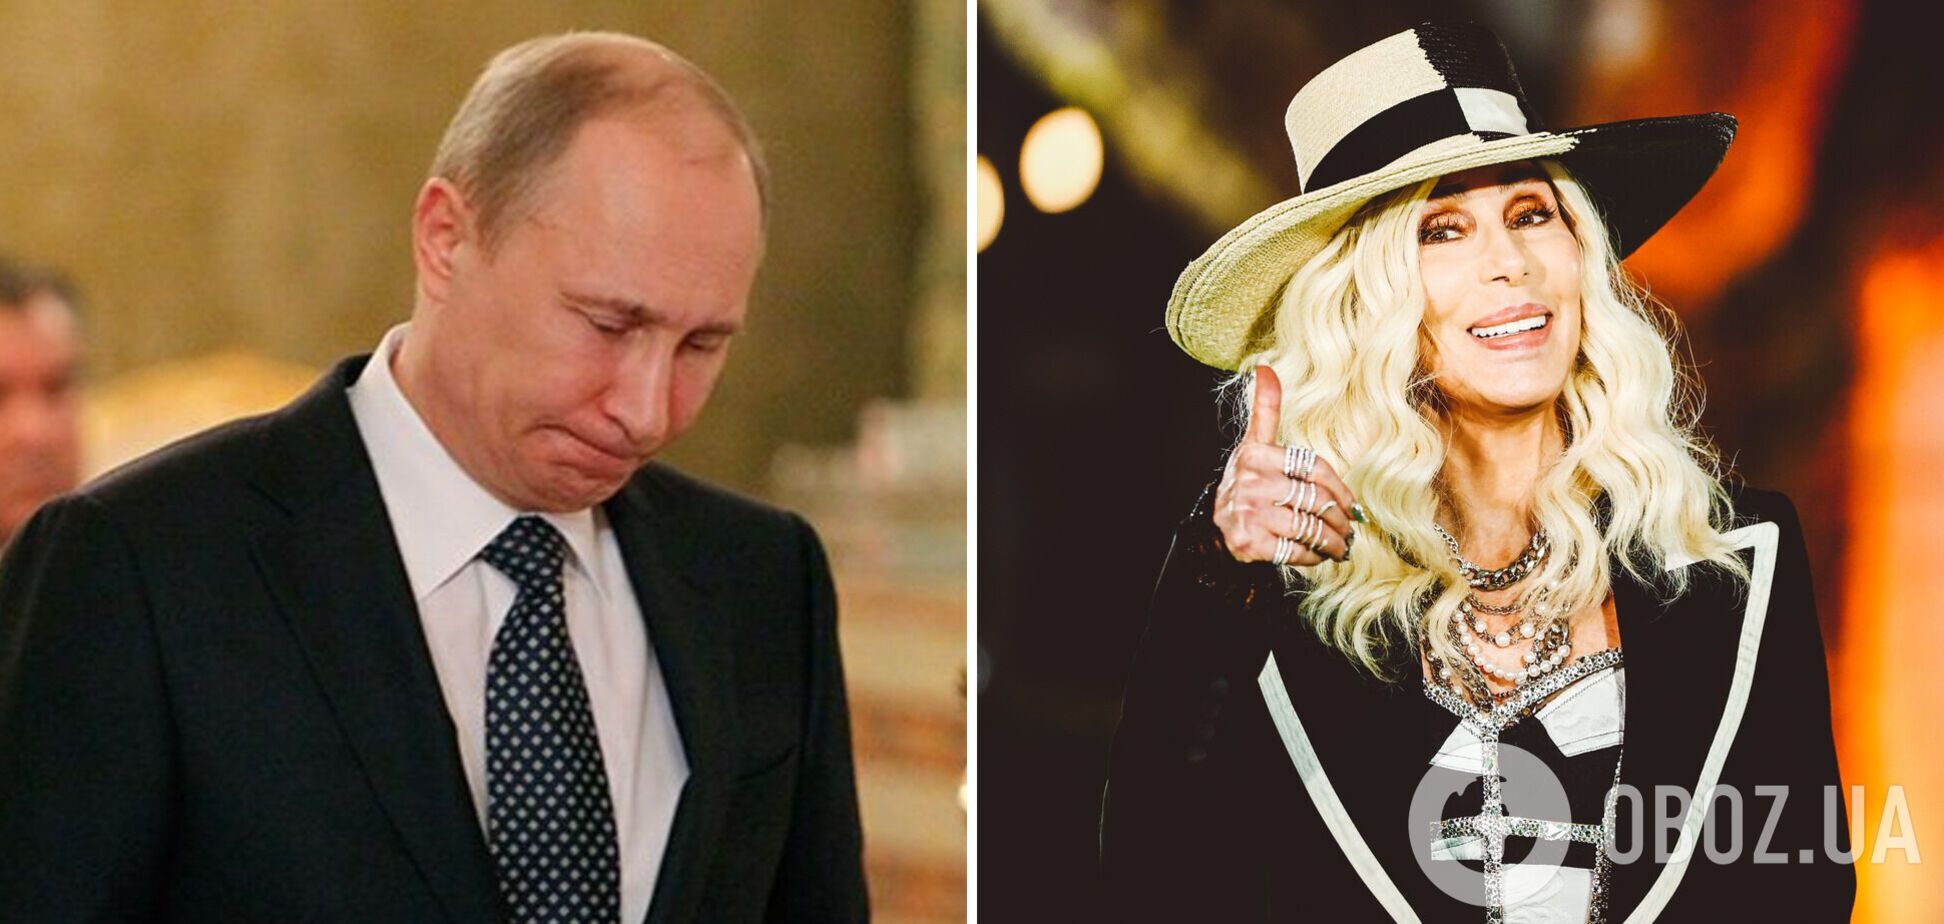 Певица Шер высмеяла Путина вирусным фото с елочной игрушкой и заявила, что не желает ему счастья